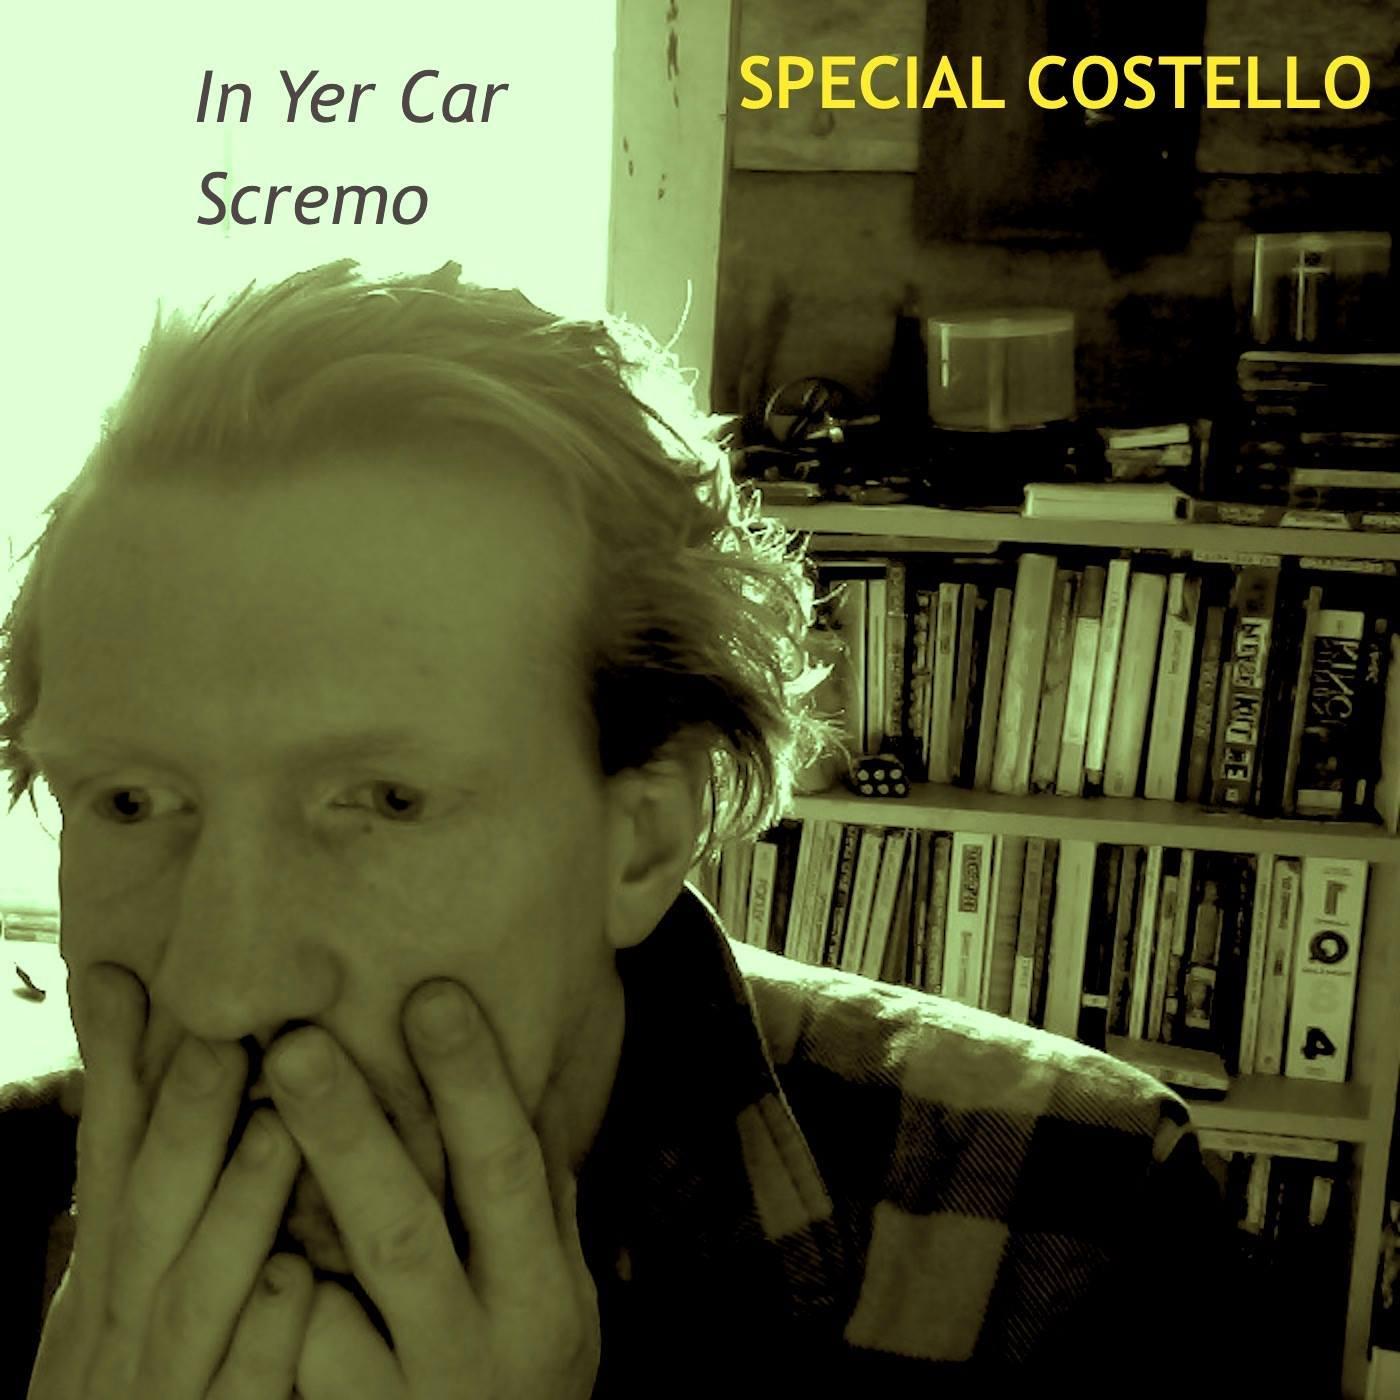 Special Costello